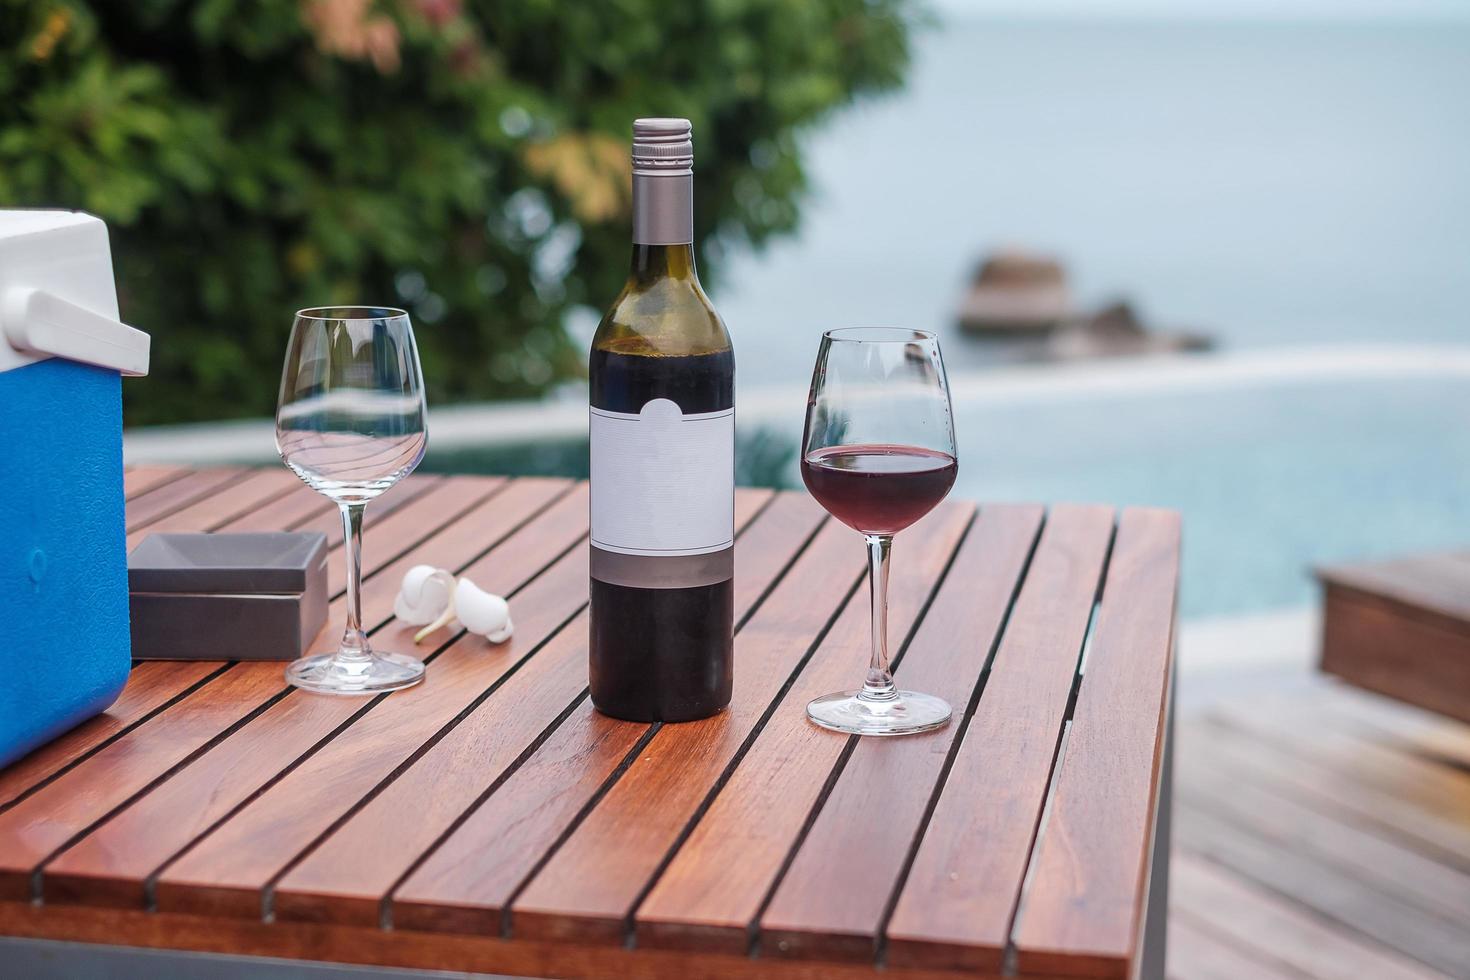 deux verres de vins rouges près de la piscine. voyage d'été, vacances, vacances et concept de week-end heureux photo